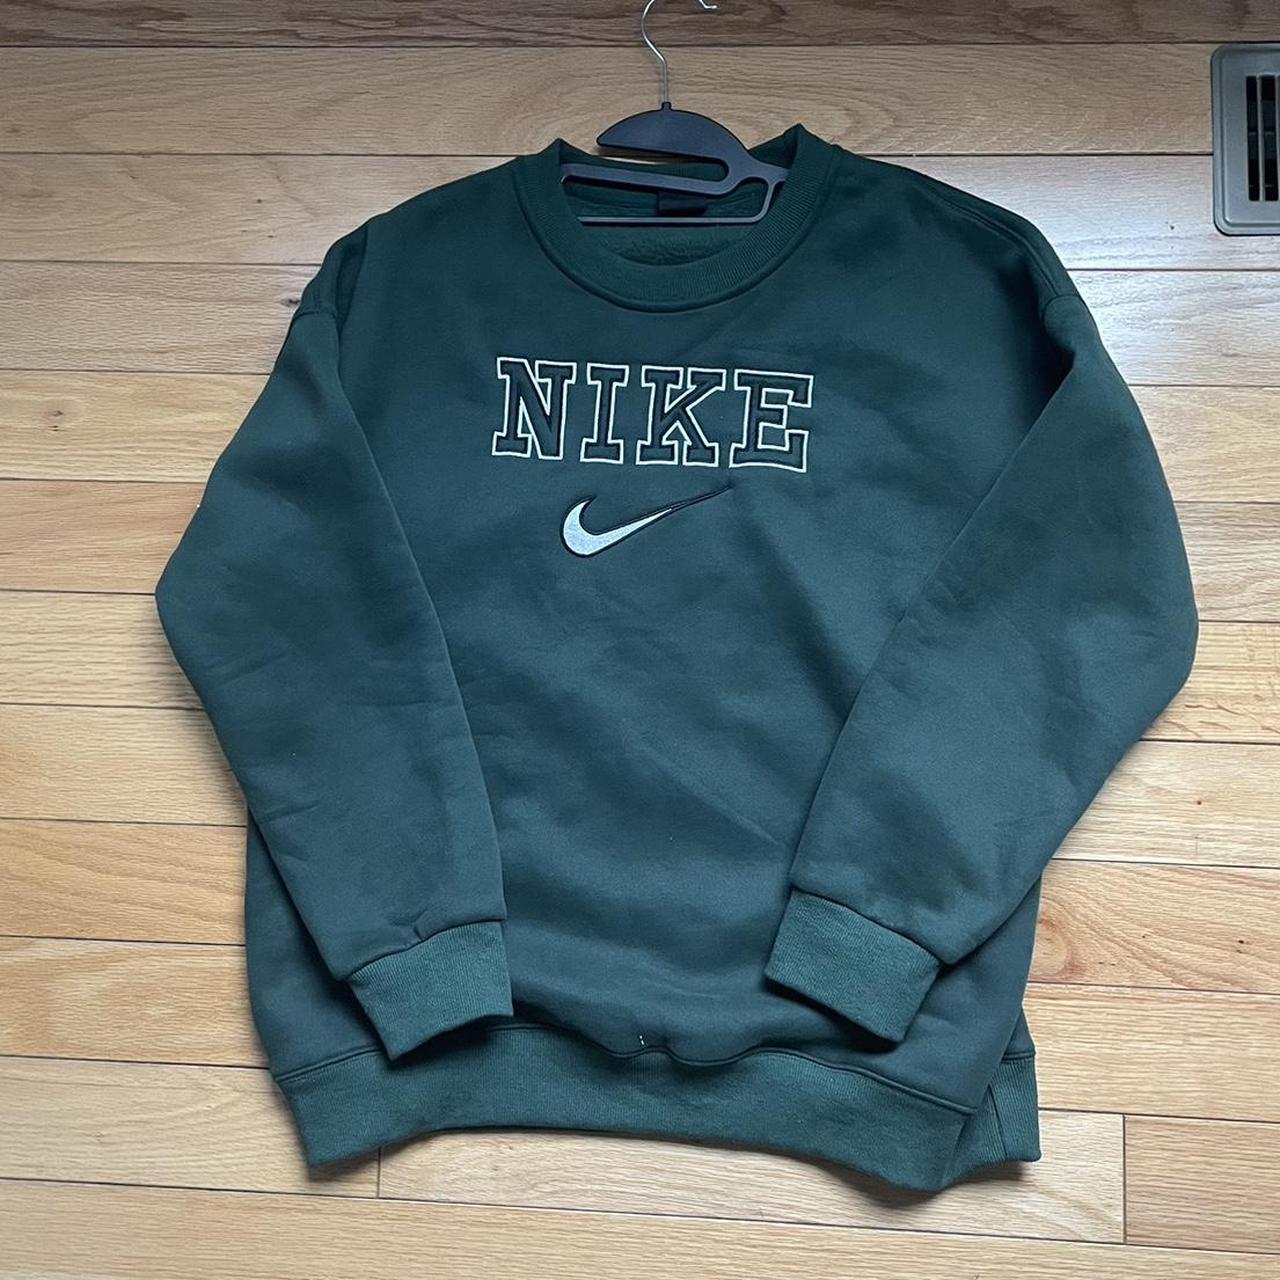 Vintage Nike sweater. - Depop